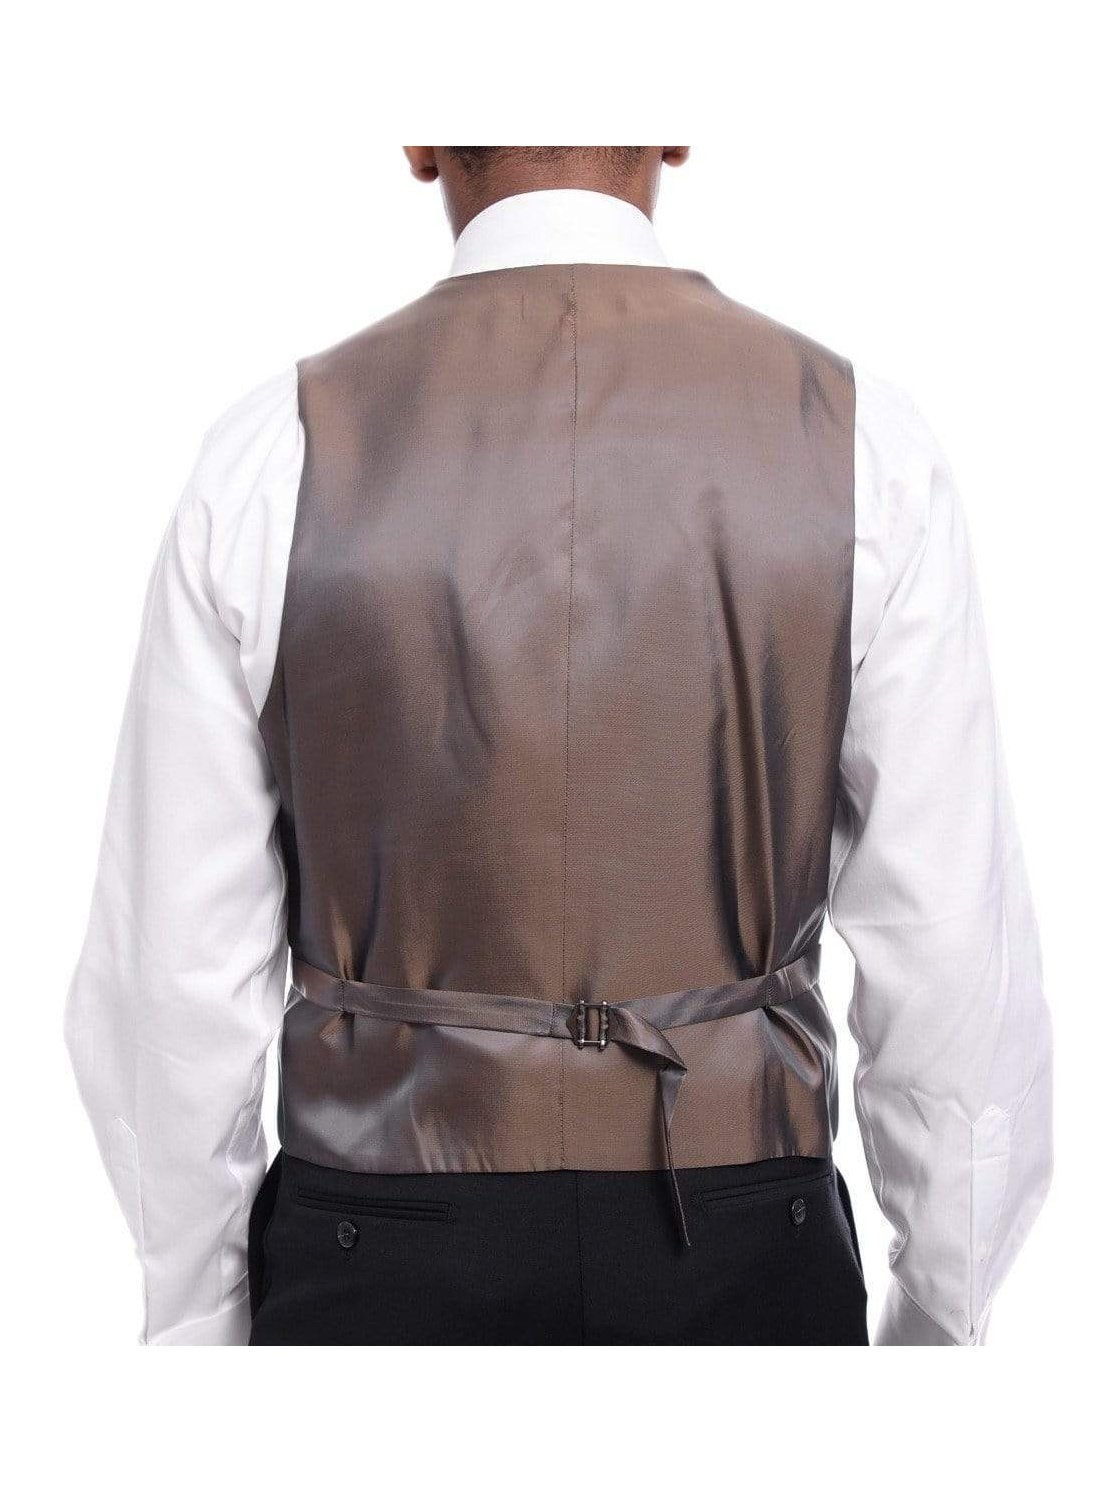 Raphael TWO PIECE SUITS Men&#39;s Raphael Classic Fit Solid Black Two Button 3 Piece 100% Wool Vested Suit